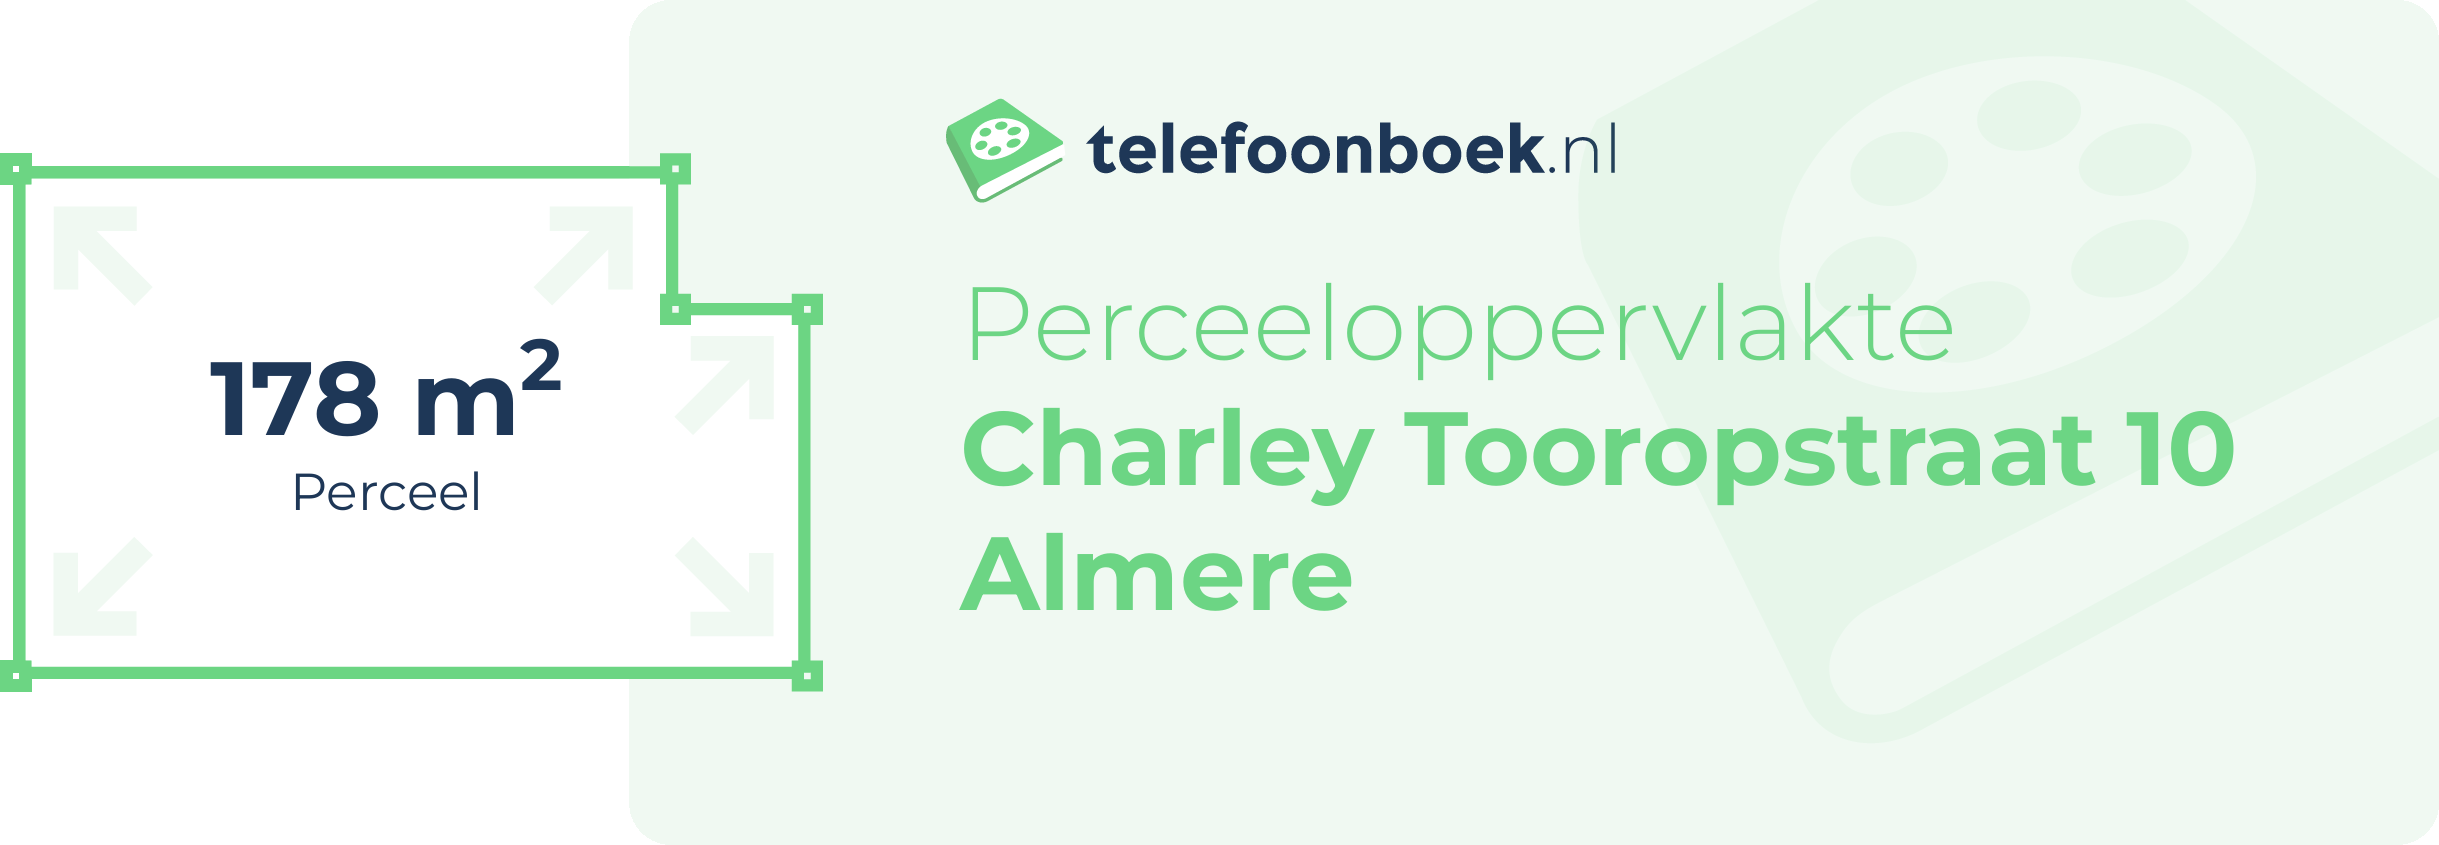 Perceeloppervlakte Charley Tooropstraat 10 Almere